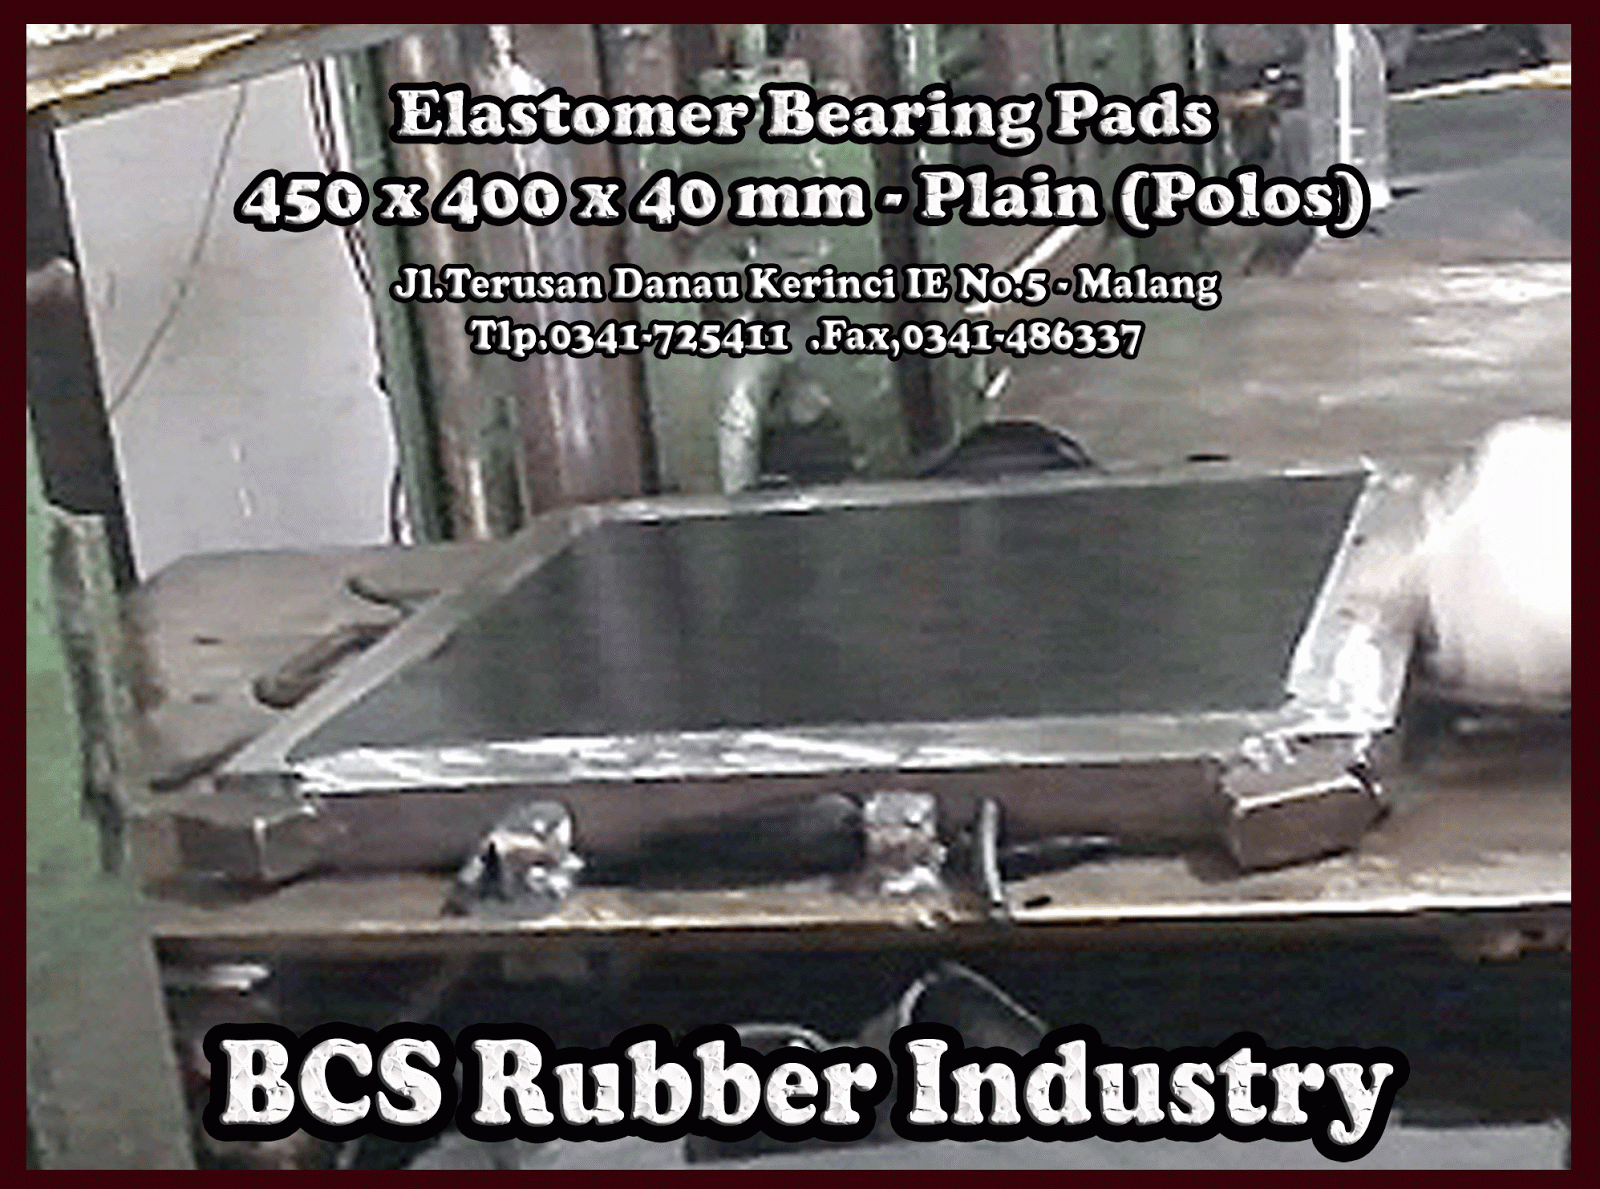 "Jual Elastomer Bearing Pad / Bantalan Jembatan ,Polos, Steel Plate, Seismic Rubber Bearing Pads..